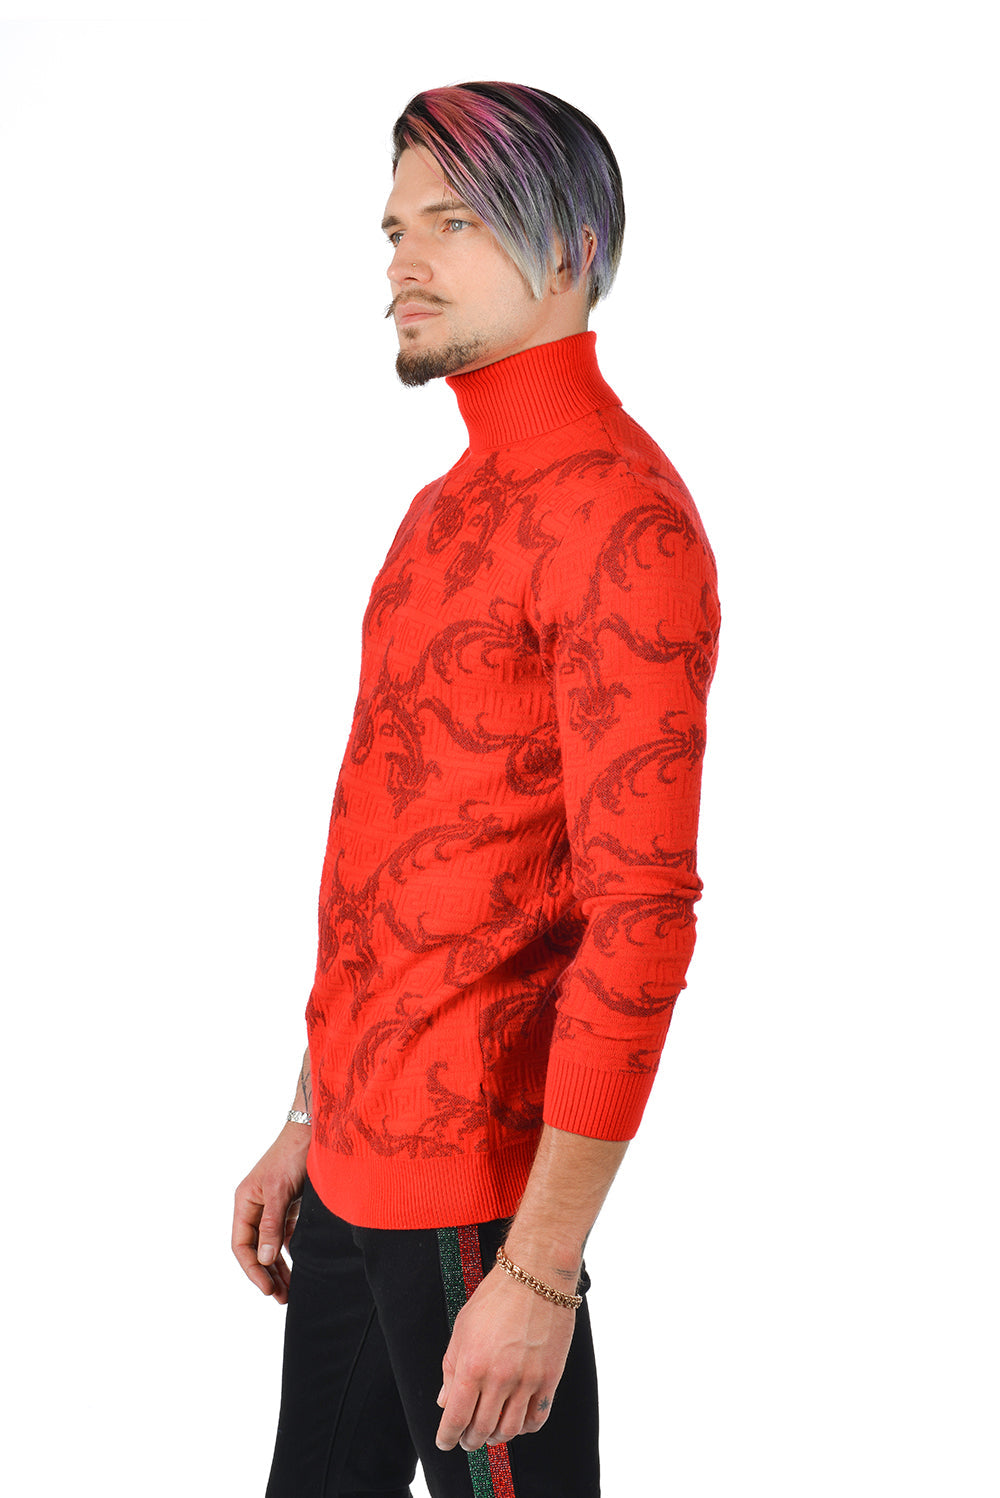 Barabas Men's Floral Print Design Long Sleeve Turtleneck Sweater 2LS2102 Red